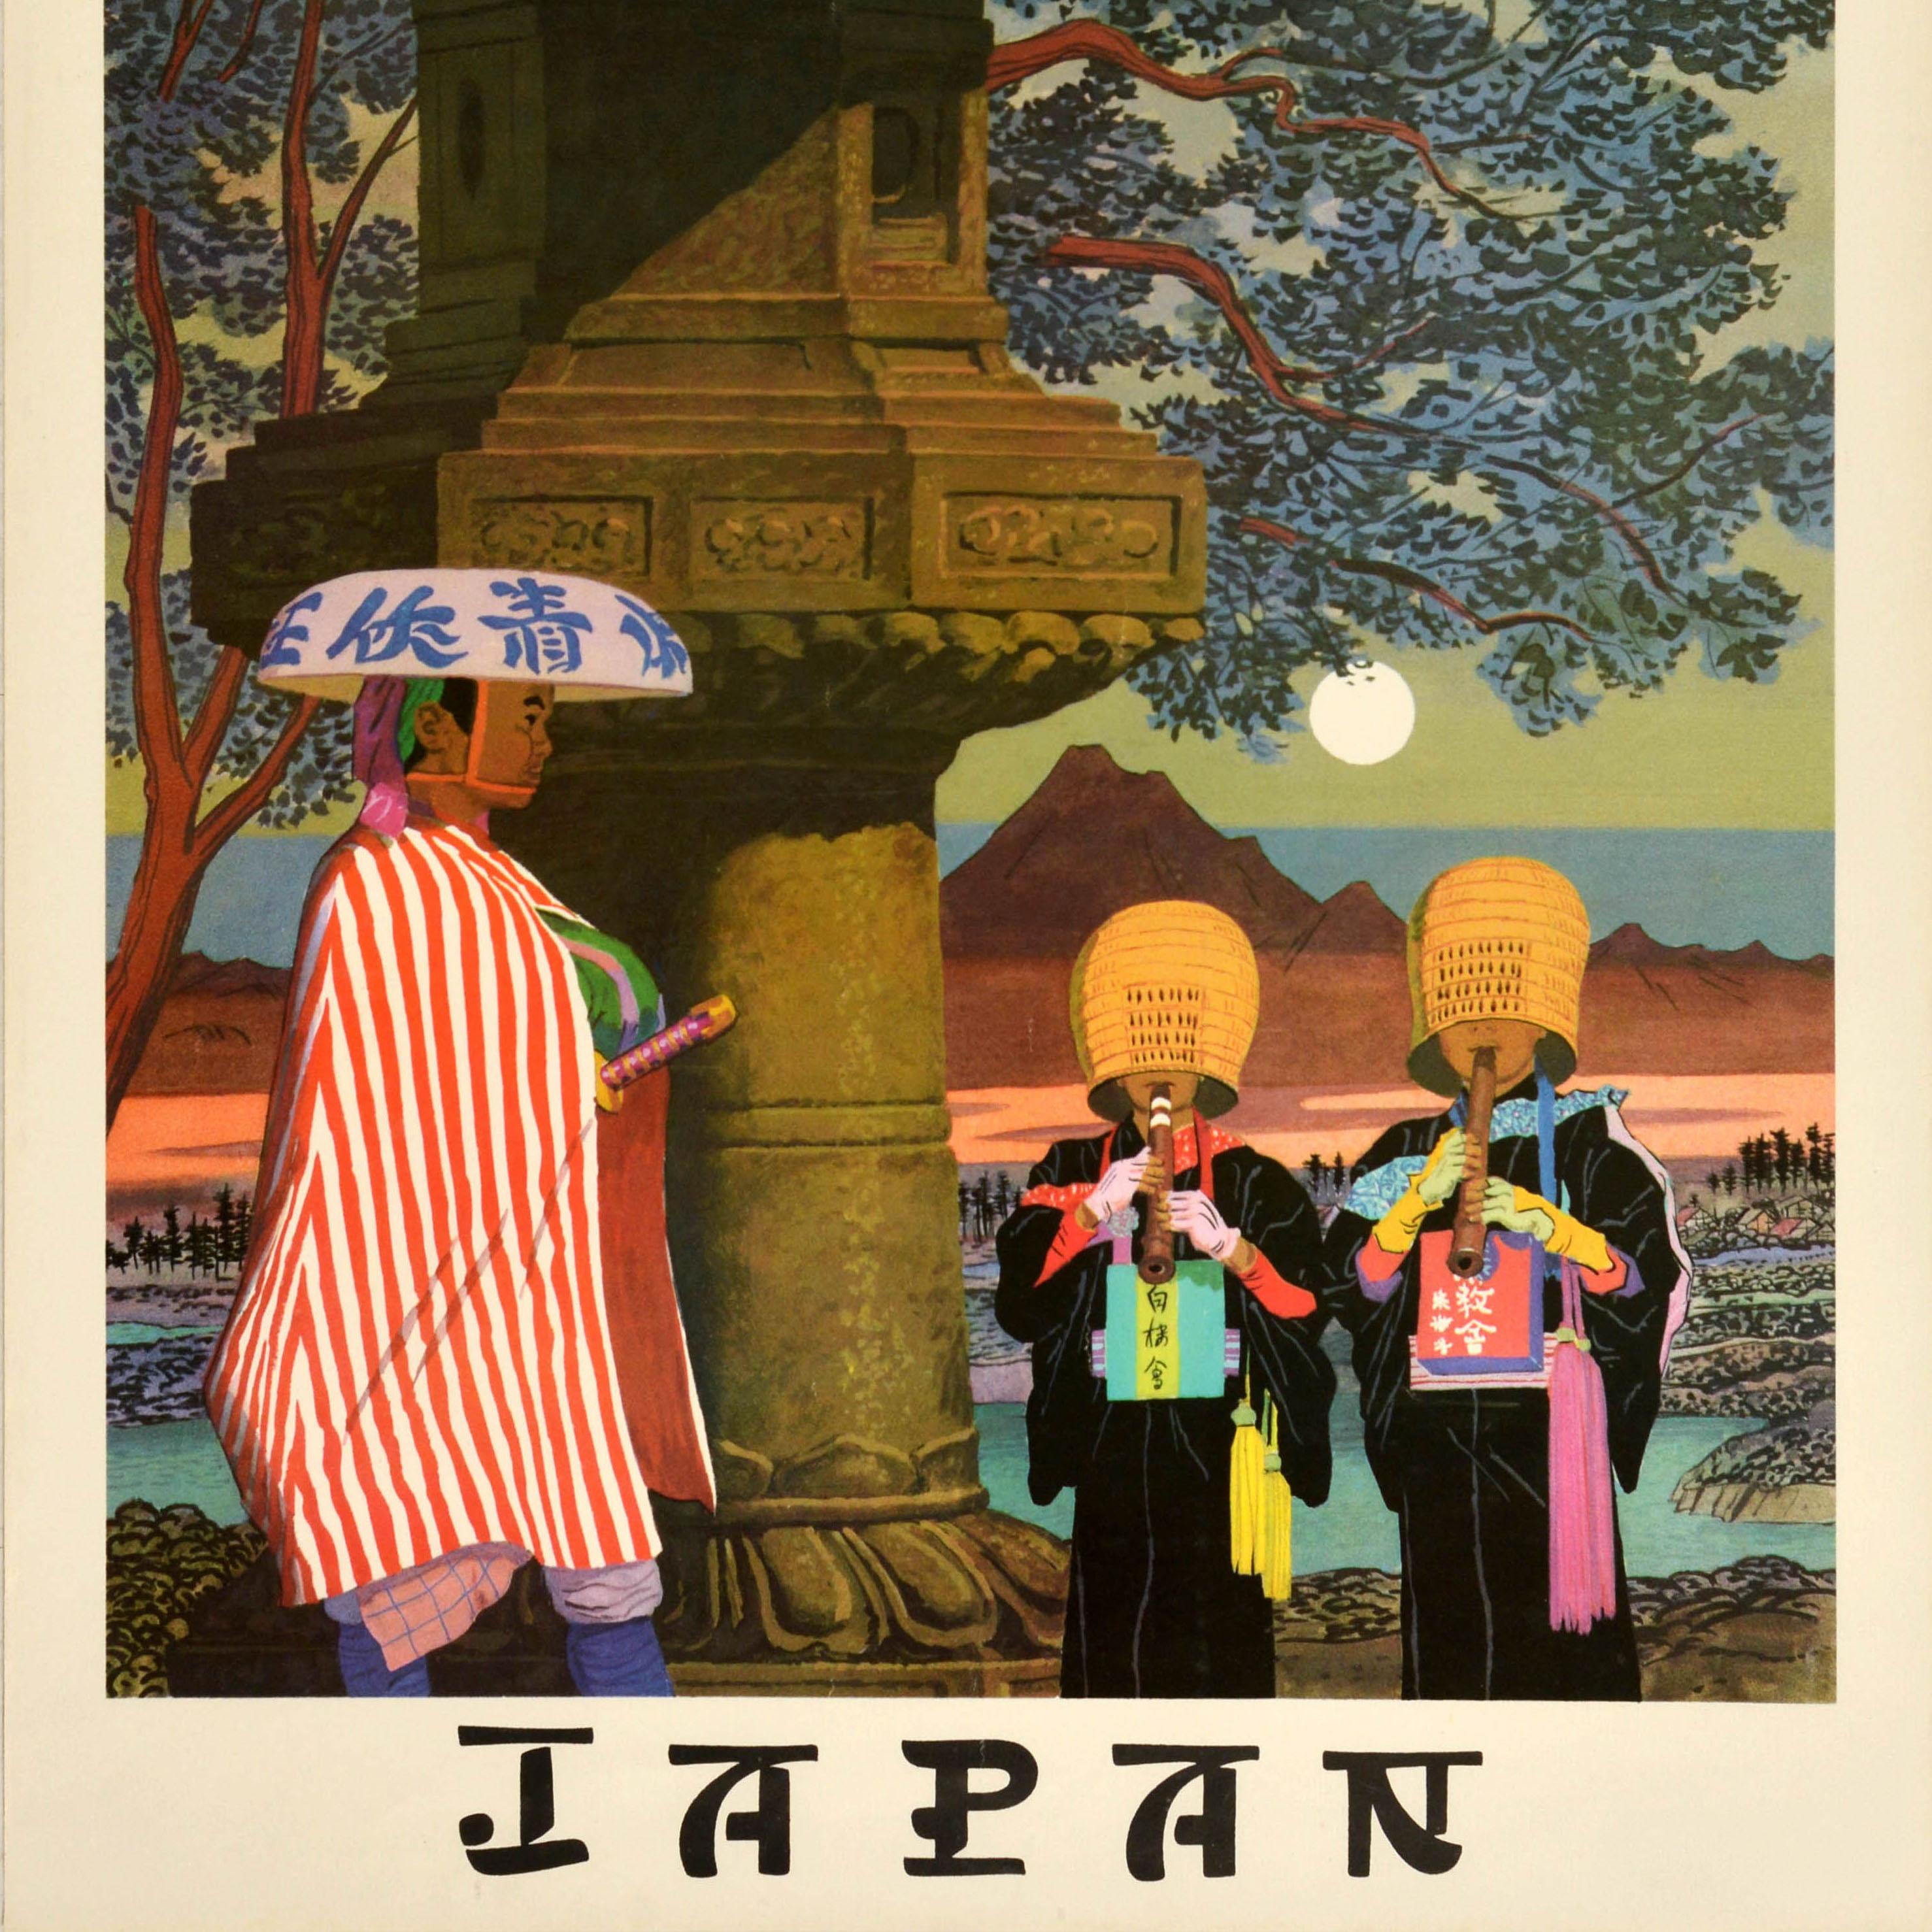 Original Vintage-Reise-Werbeplakat für Japan mit einem großen Bild einer Person, die einen traditionellen bambusgeflochtenen Sandogasa Ronin Samurai-Hut trägt und ein Schwert unter seinem rot-weißen Umhang trägt. Sie geht neben zwei